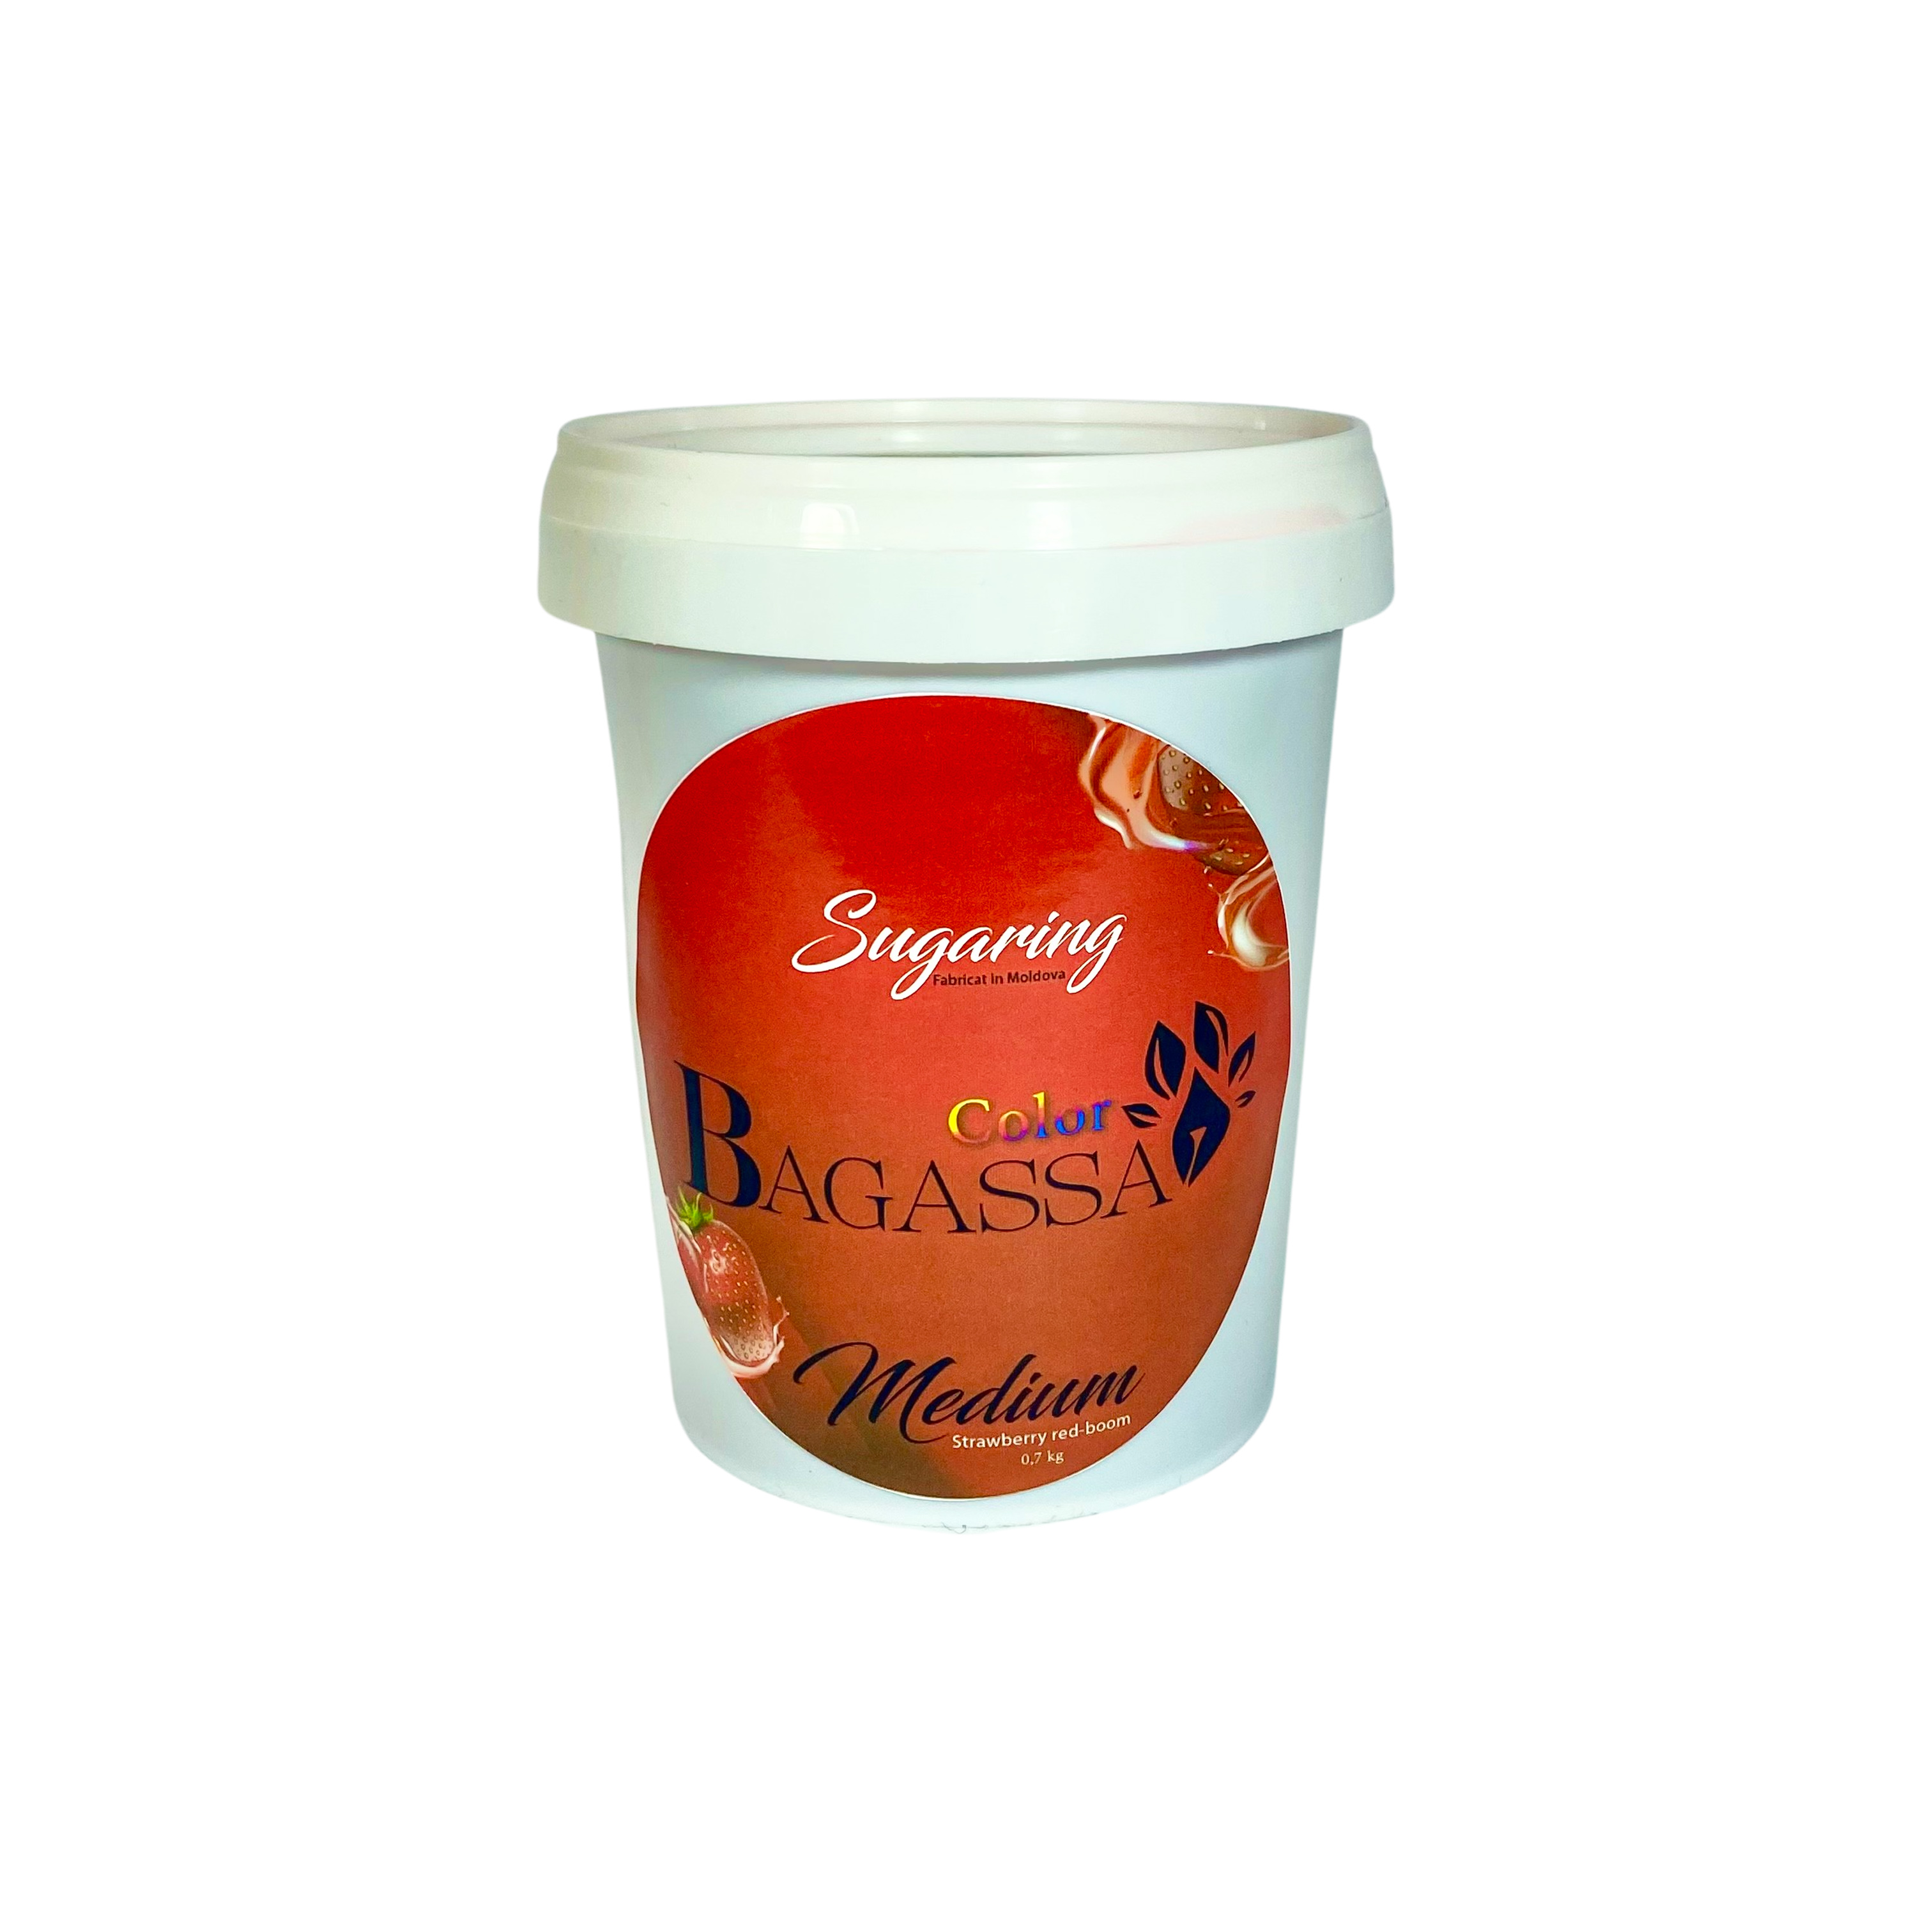 Bagassa Color Medium - Sugaring pasta capsuna 700 gr